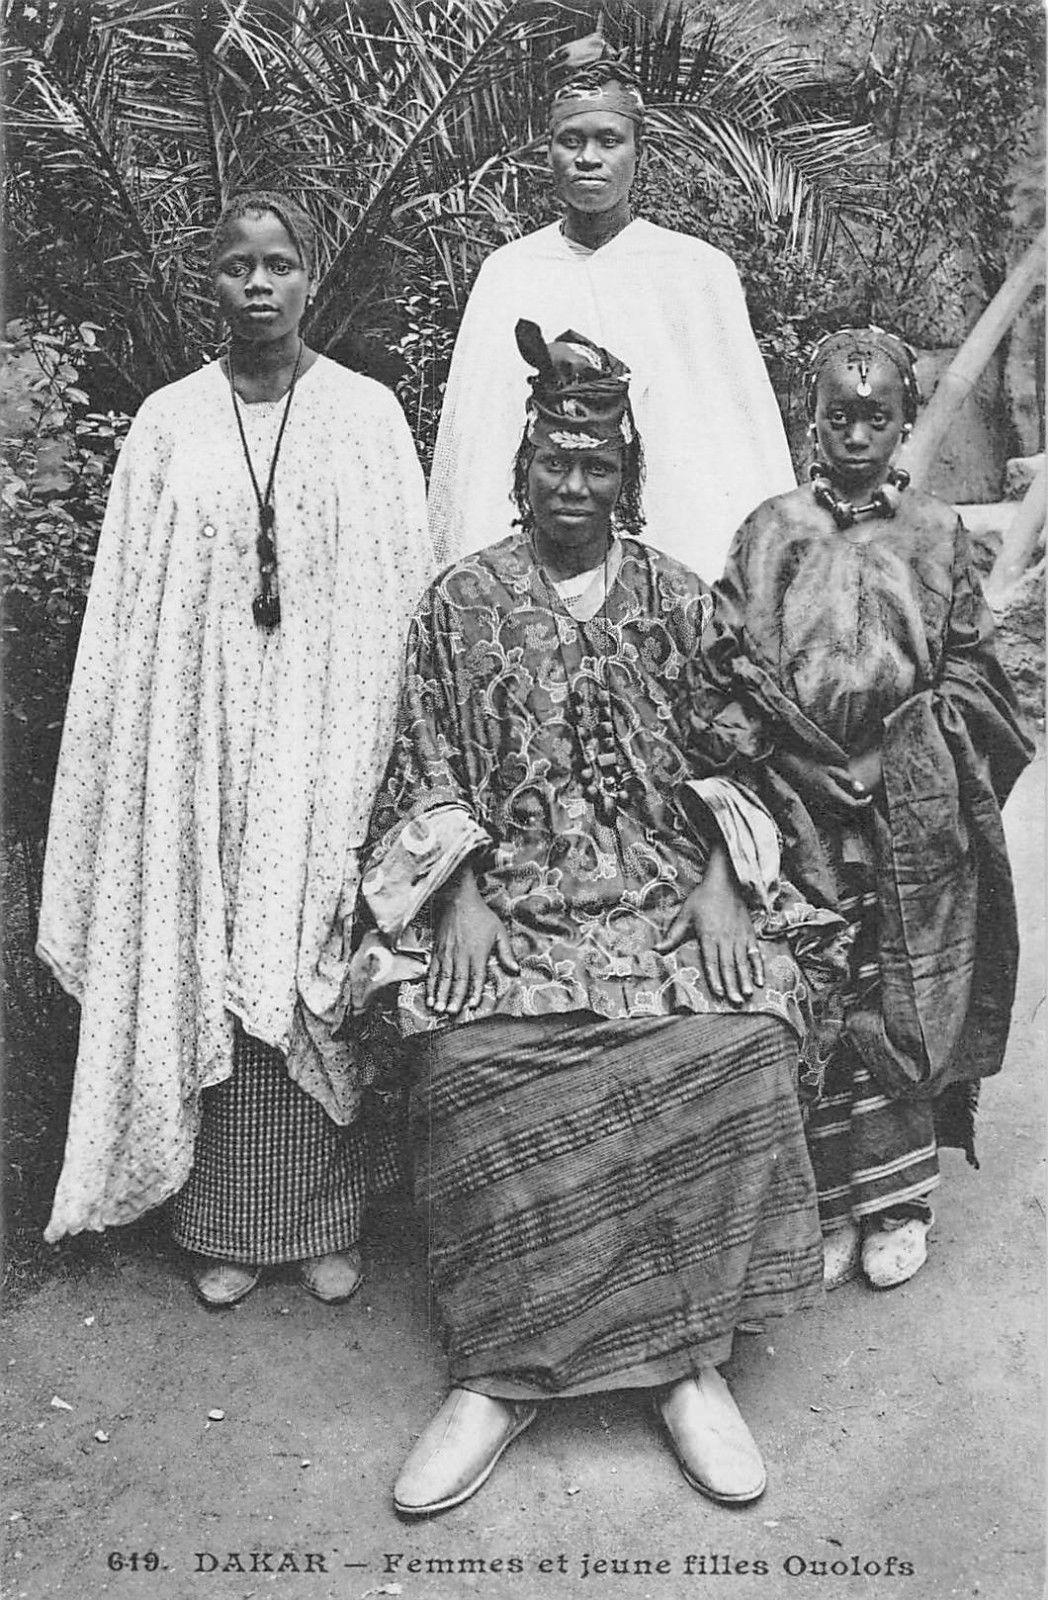 El matriarcado Wolof (Senegal): un reinado matrilineal convertido en patrilineal por la islamización.